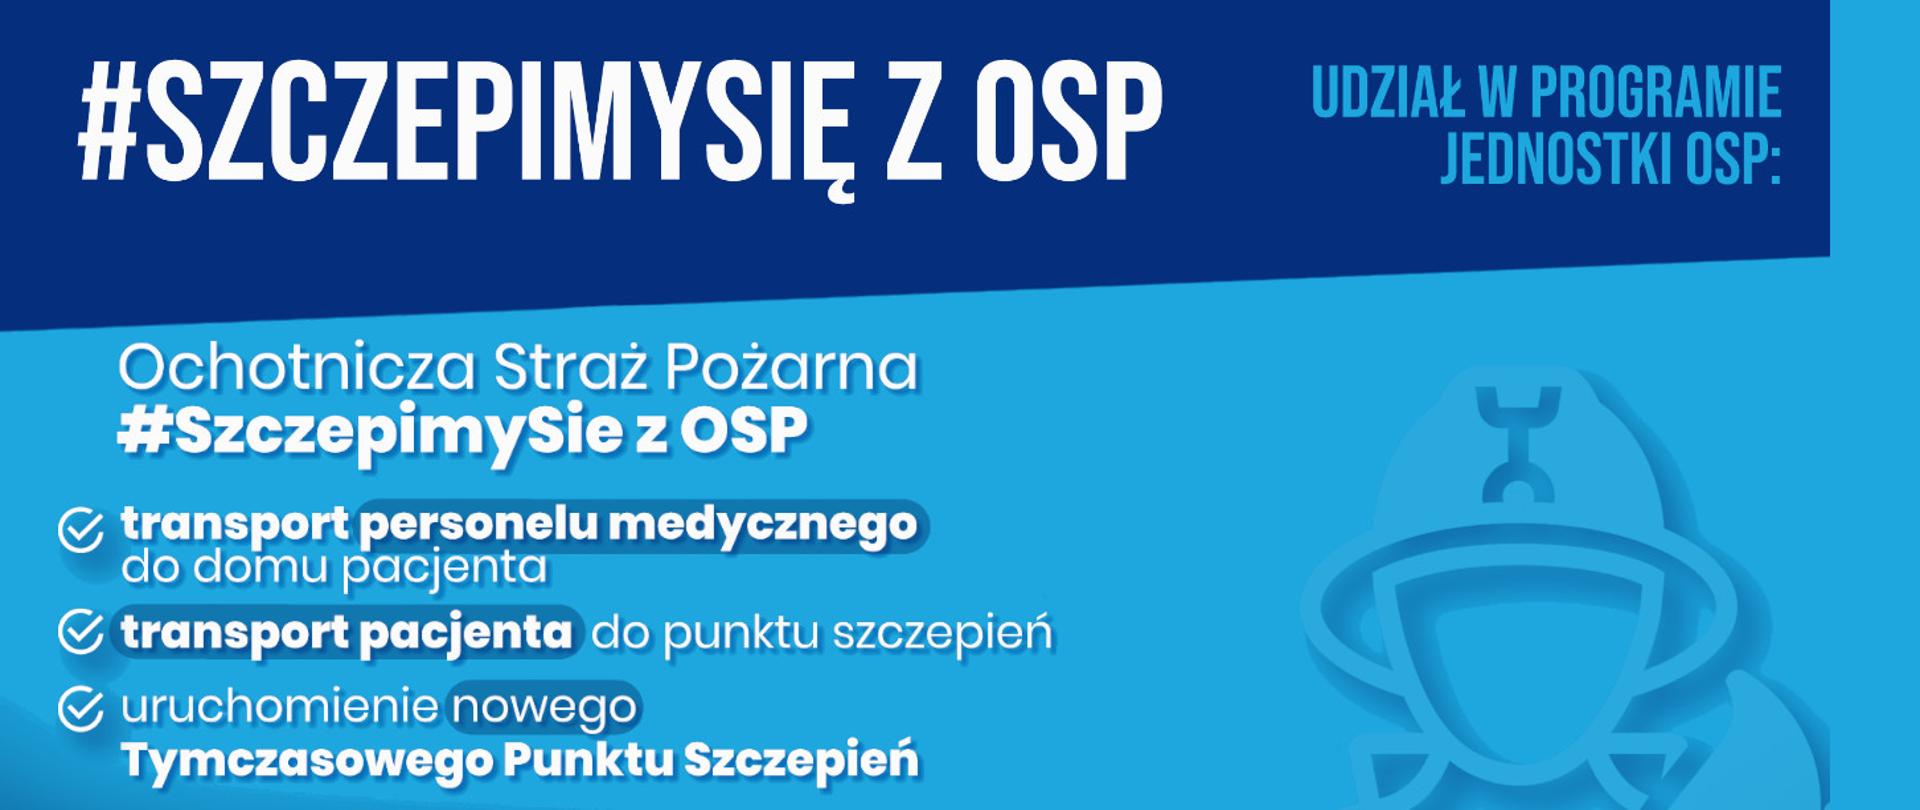 Na banerze widzimy napis #SzczepimySię z OSP. Na banerze znajdują się również hasła: transport personelu medycznego, transport pacjenta, tymczasowe punkty szczepień. Wszystko znajduje się na niebieskim tle.